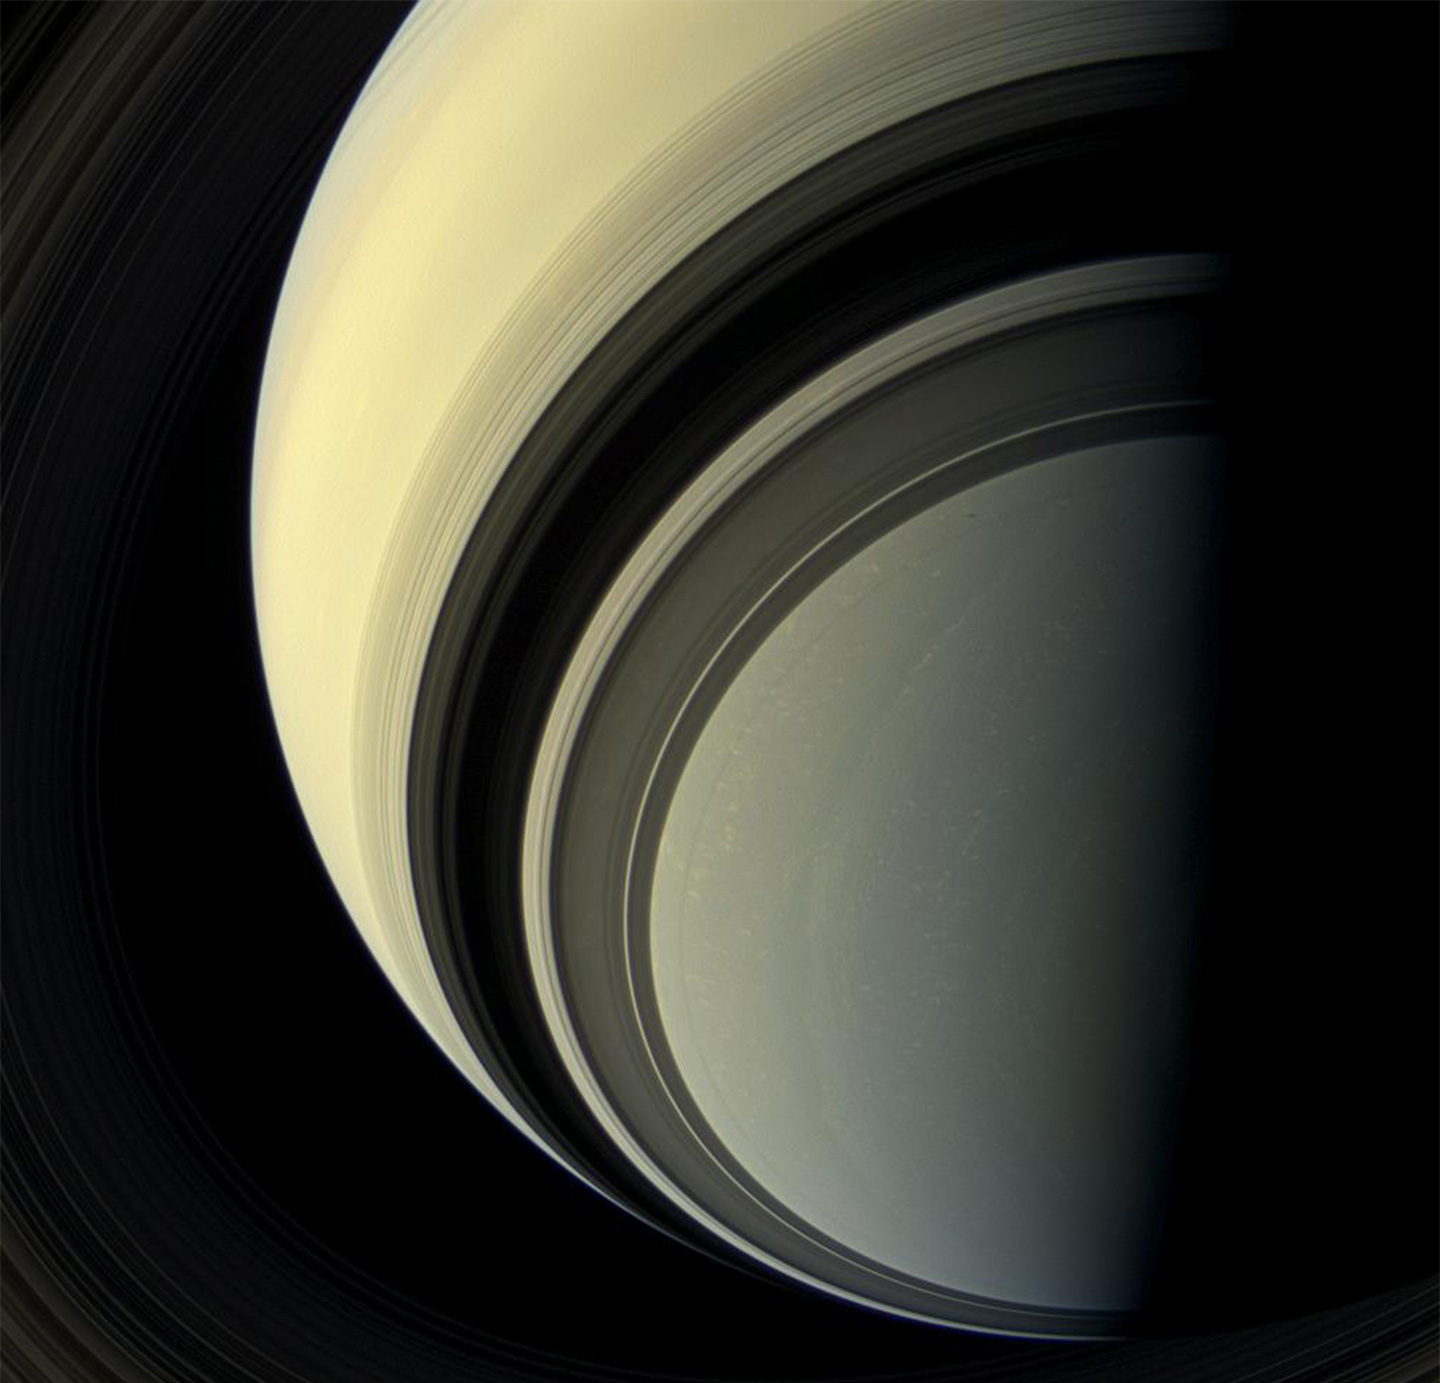 Cassini Spacecraft Images